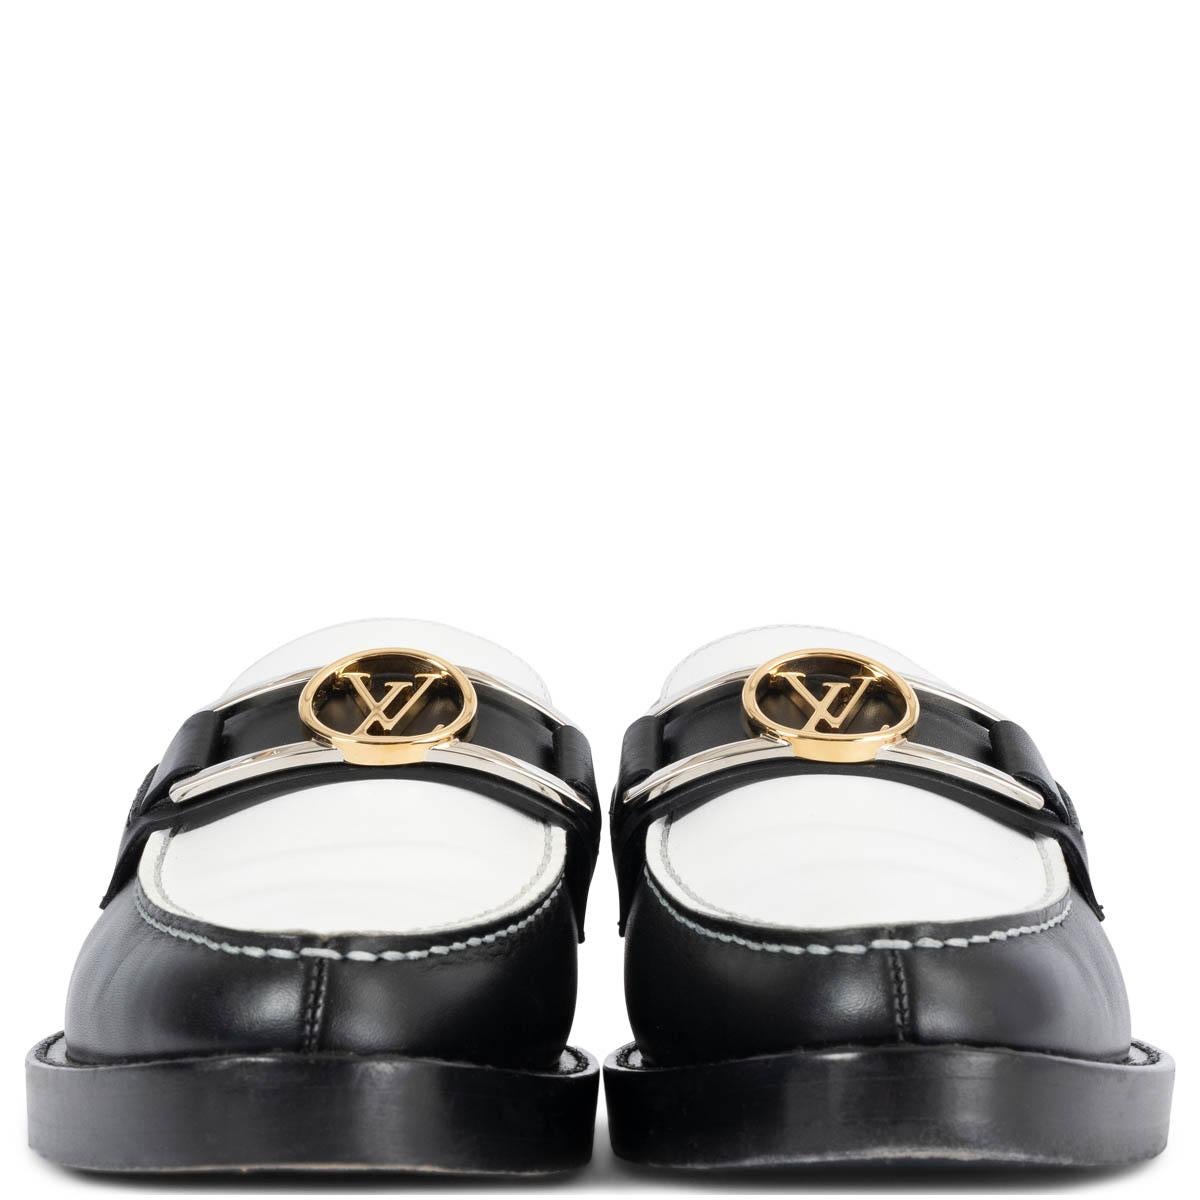 100% authentischer Louis Vuitton Academy flacher Loafer aus schwarzem und weißem Kalbsleder, der einem jungenhaften Klassiker eine schicke Wendung gibt. Sie ist mit einem LV-Accessoire aus gold- und silberfarbenem Metall verziert, das von der